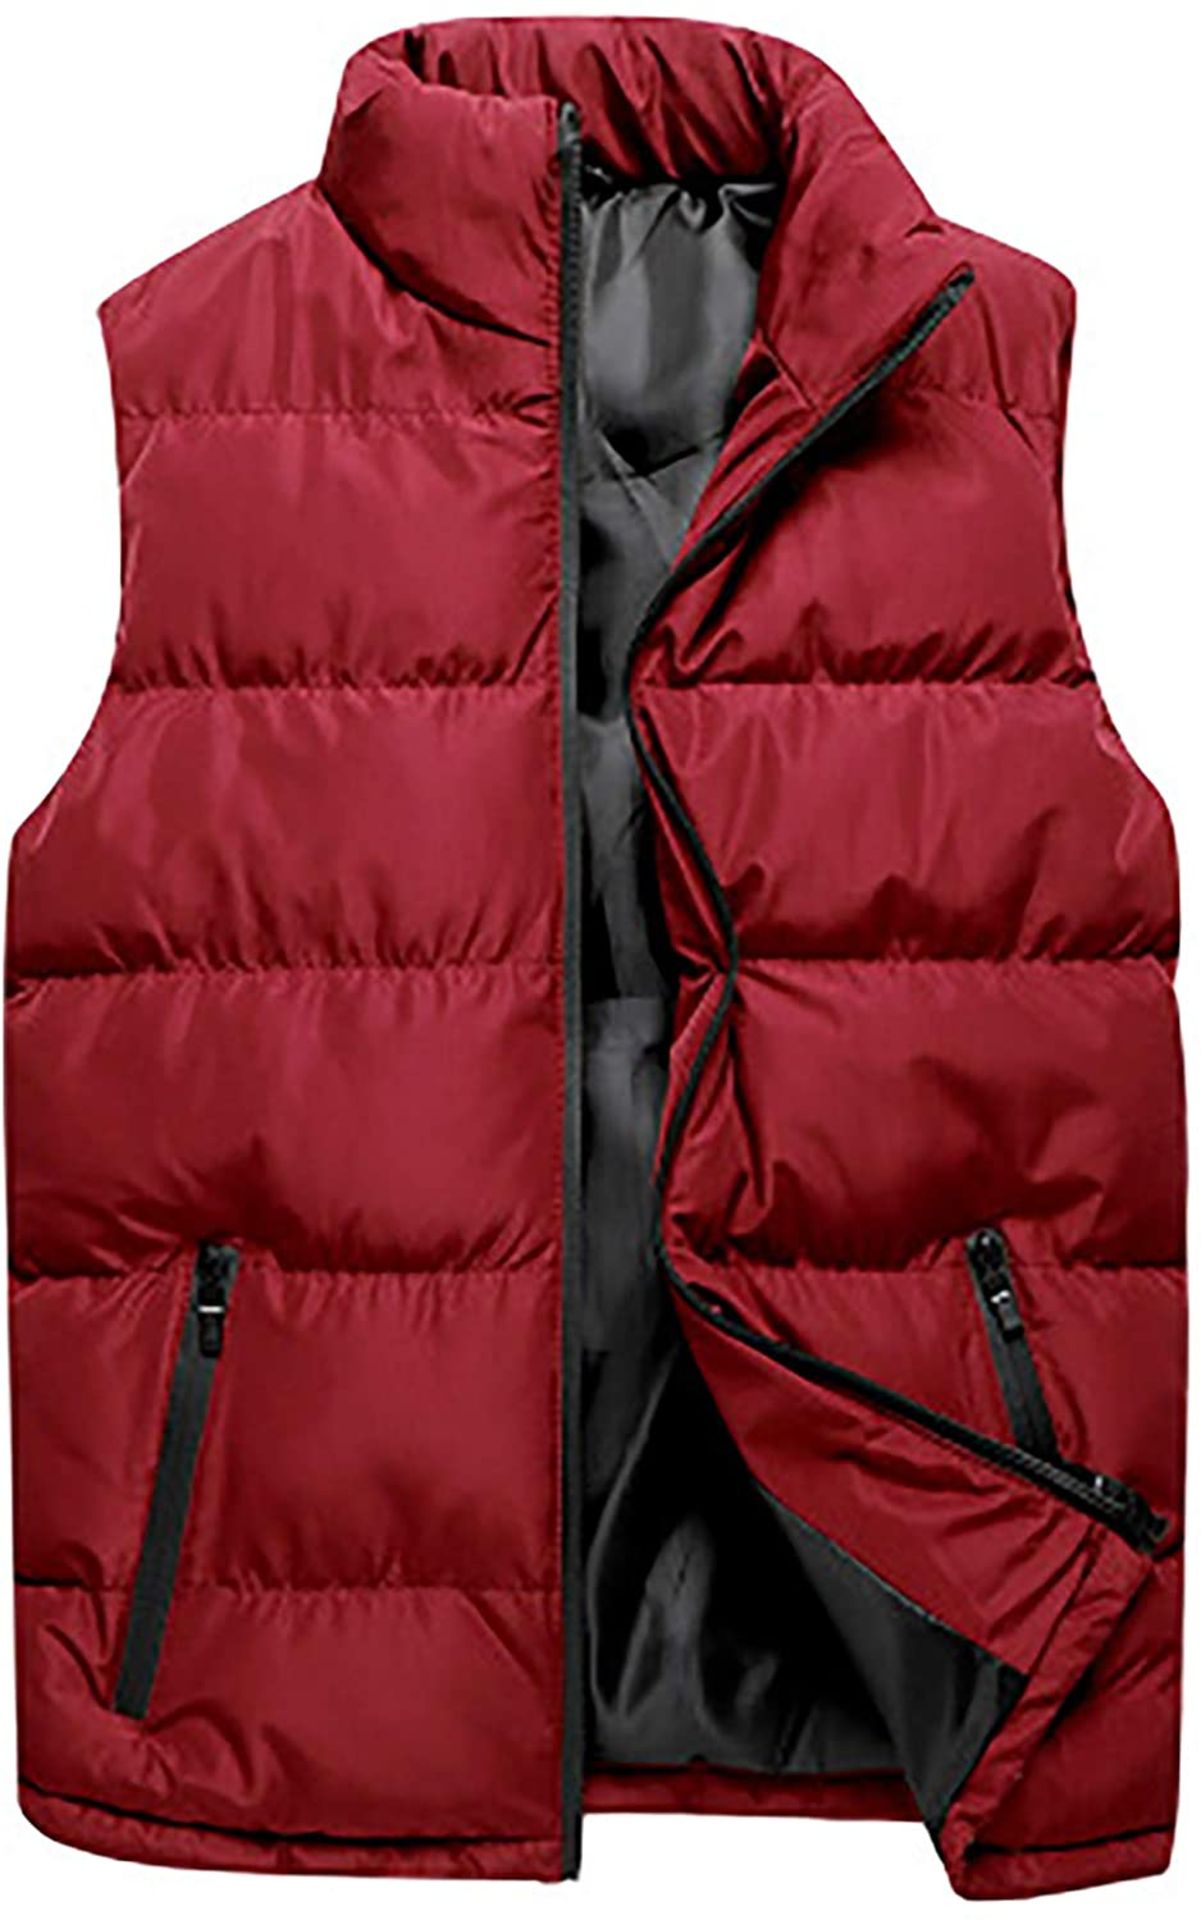 Men's Down Vest - Winter Warm Waterproof Vest Jacket, Medium RRP £31.99